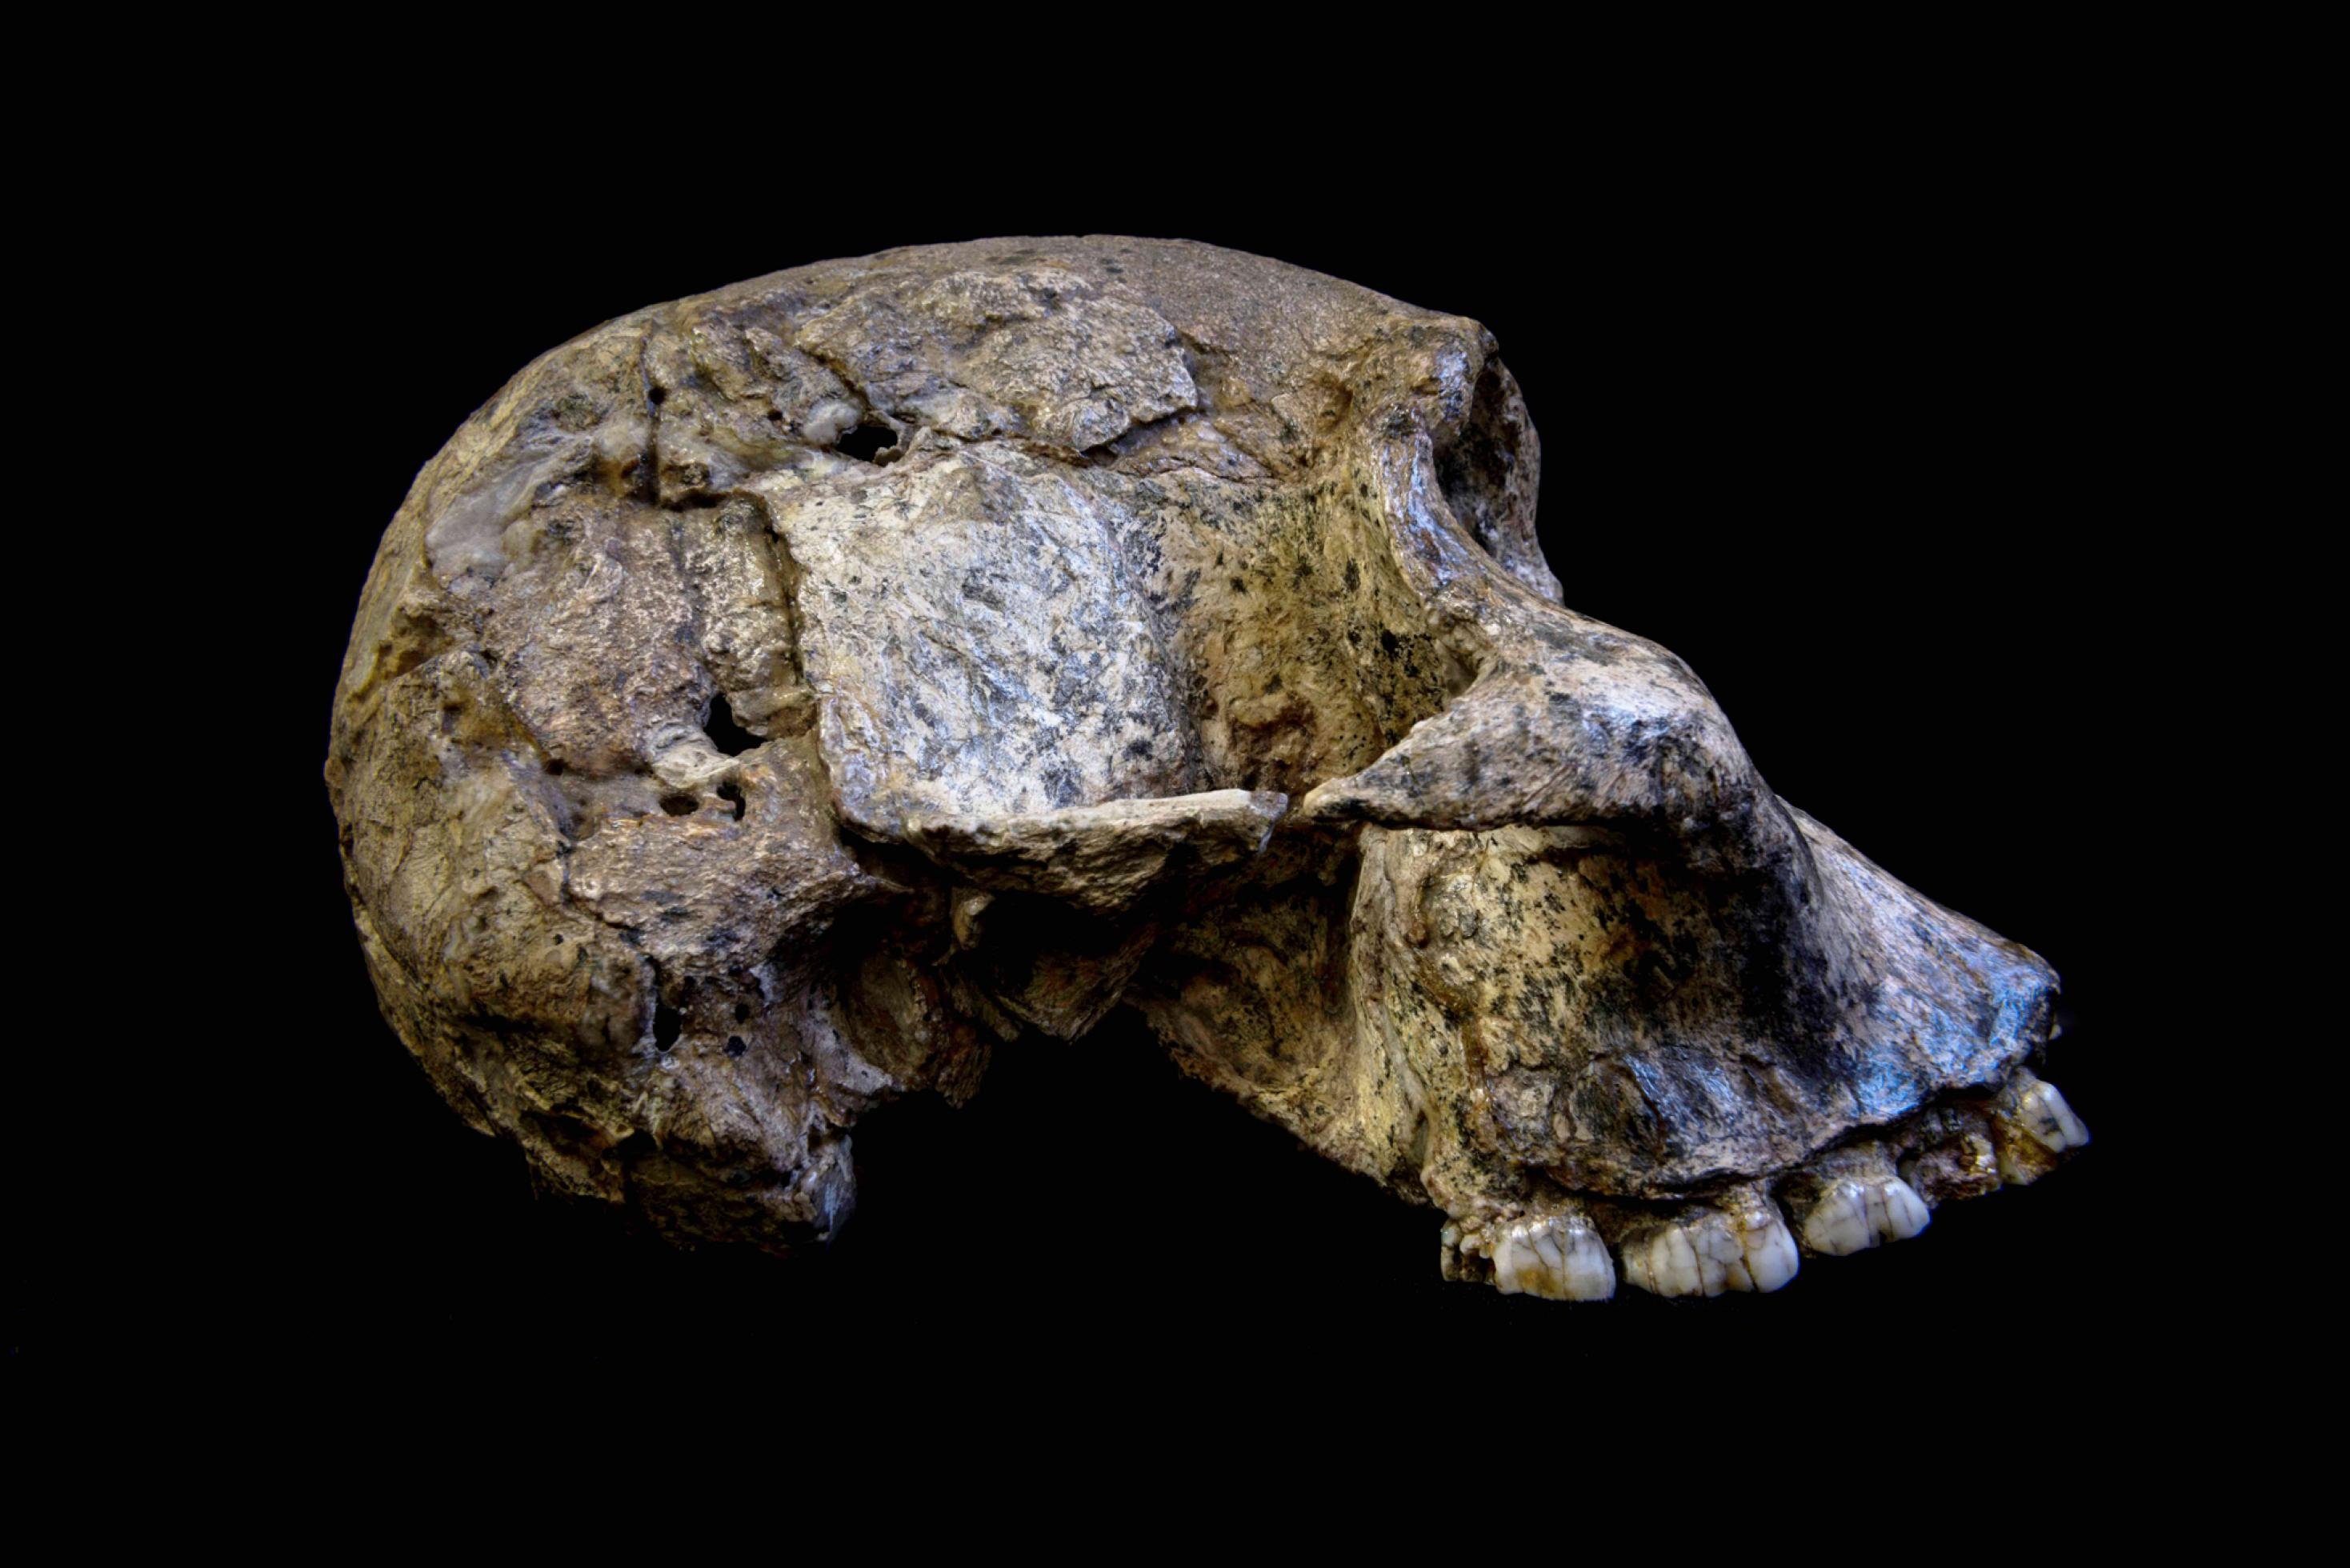 Abgebildet ist der fossile, von der Seite fotografierte Schädel eines Australopithecus africanus. Diese Vormenschen, deren Schädel noch recht stark denen von Schimpansen ähneln, lebten vor 3 bis 2,1 Millionen Jahren in den Savannen Afrikas. In ihrem Stillverhalten waren sie allerdings sehr flexibel, wie Zahnanalysen jetzt erwiesen.